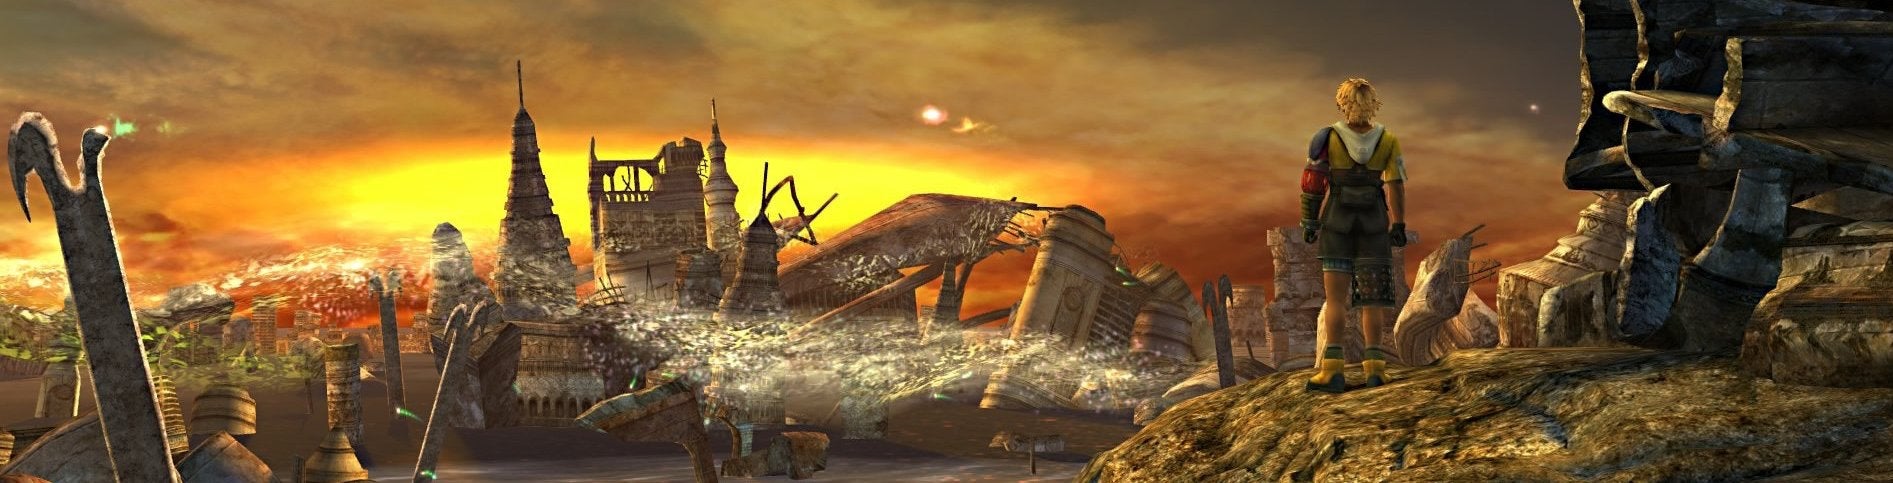 Immagine di Final Fantasy X/X-2 HD Remaster su PC - analisi comparativa